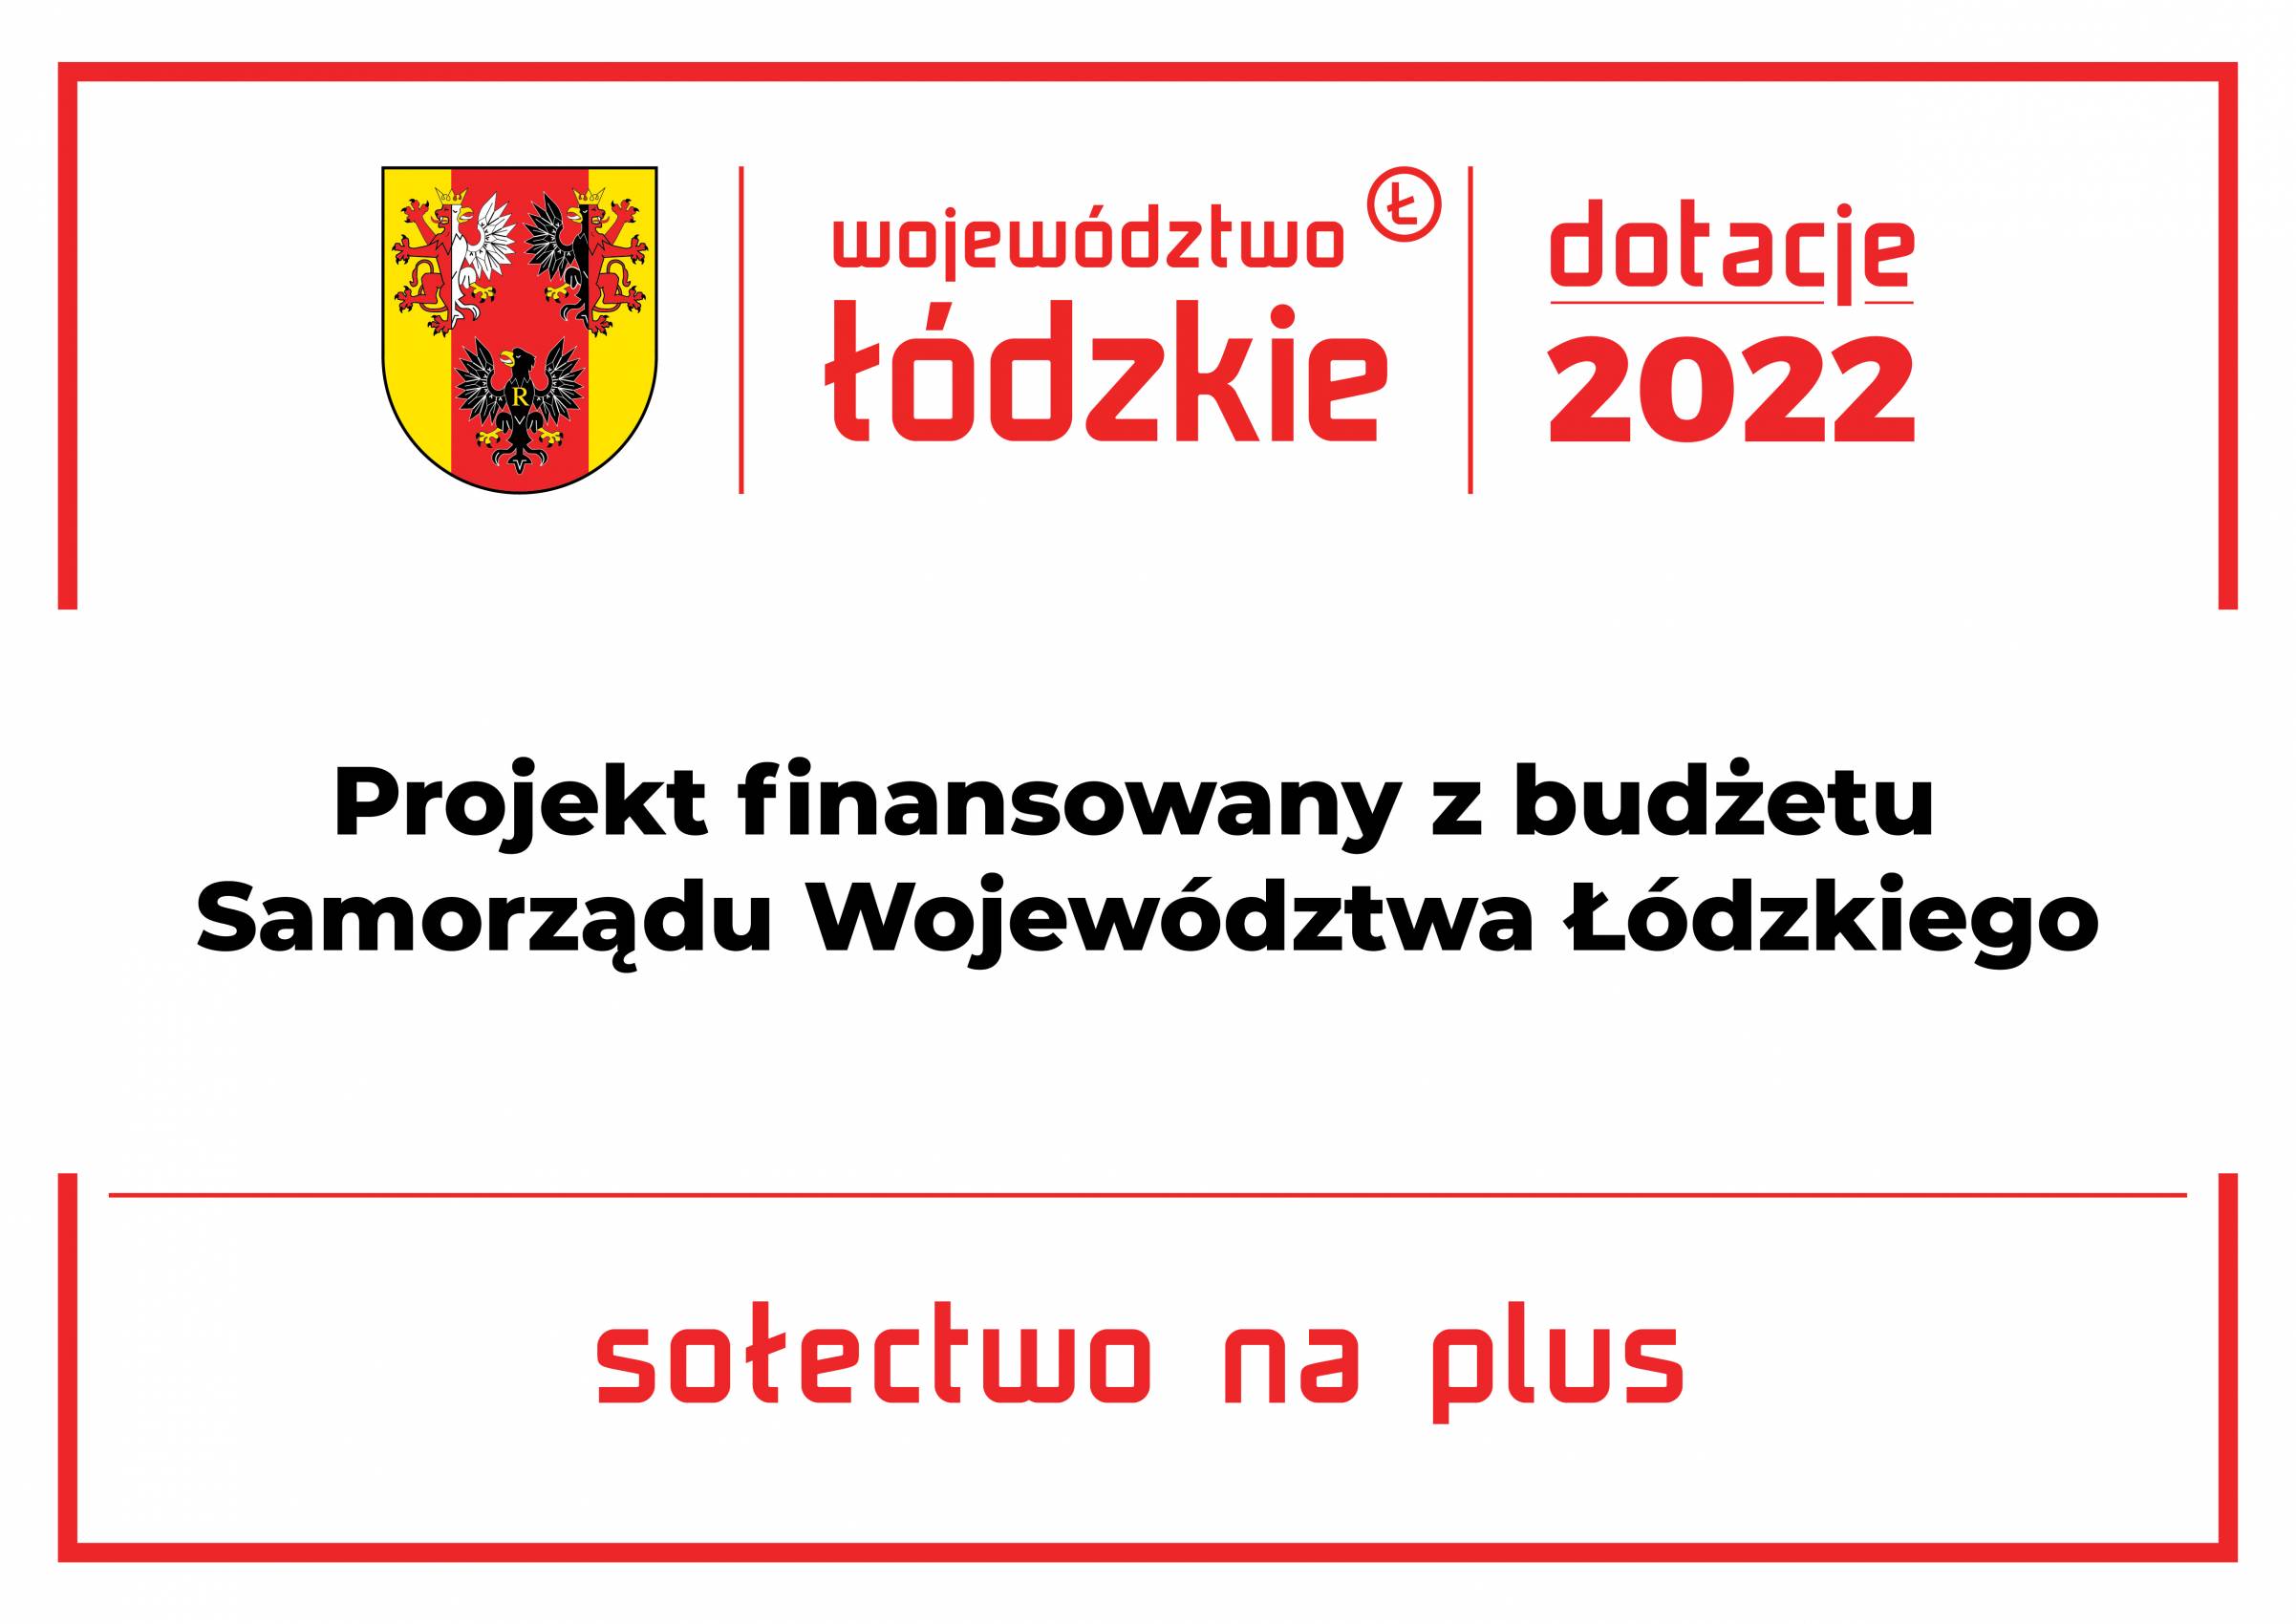 Realizacja zadania pn.: „Sołectwo na plus na 2022”, zgłoszonego przez Sołectwo Borucice dobiegła końca.